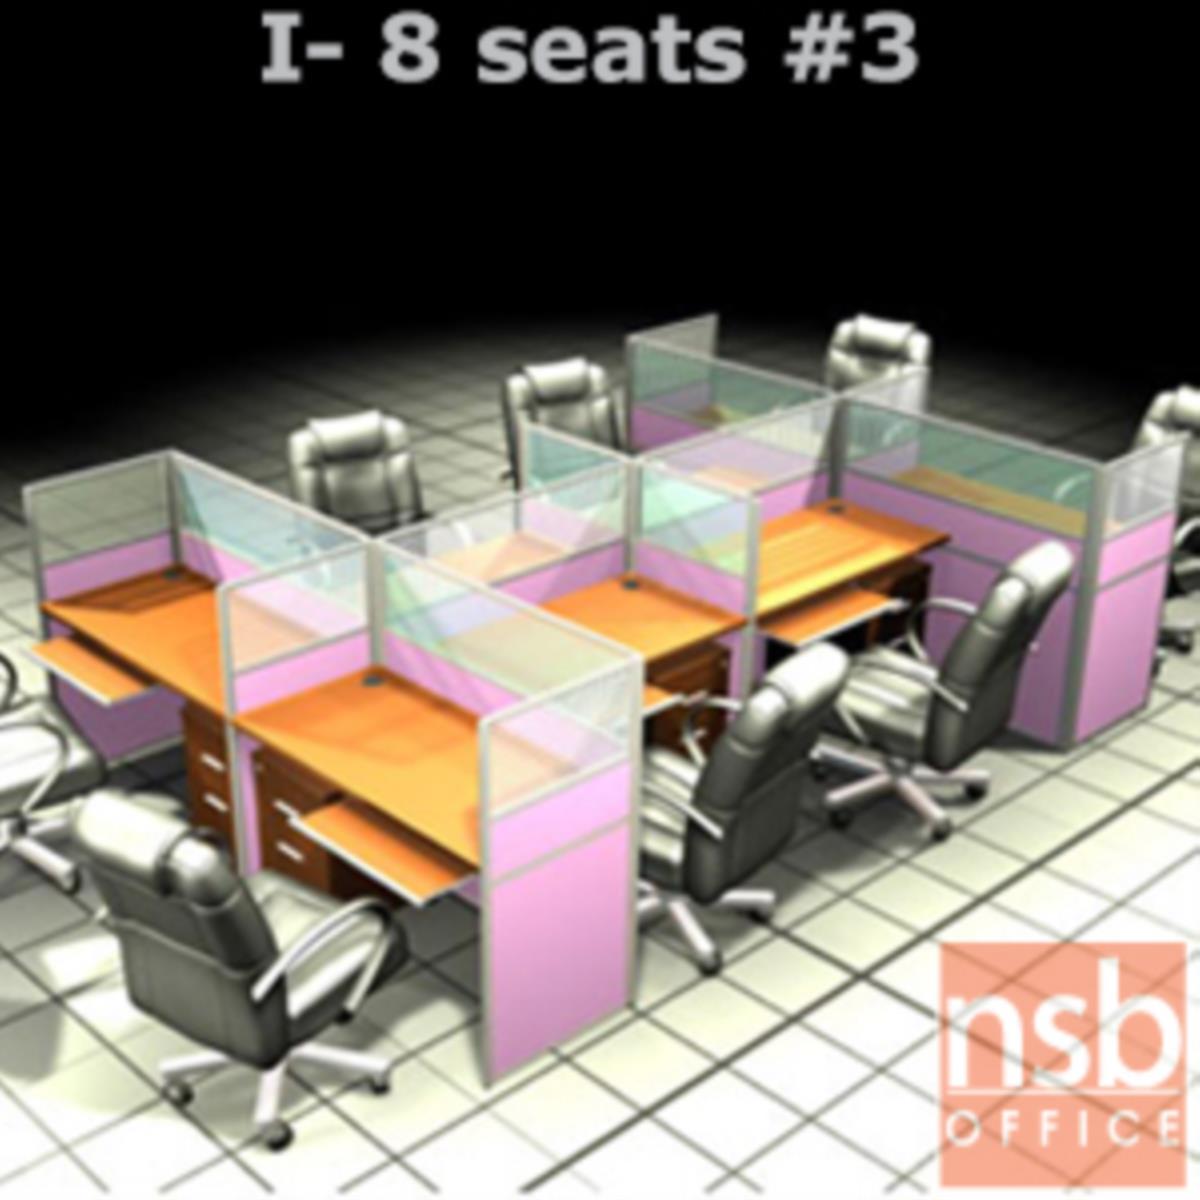 A04A095:ชุดโต๊ะทำงานกลุ่ม 8 ที่นั่ง   ขนาดรวม 366W*246D cm. พร้อมพาร์ทิชั่นครึ่งกระจกขัดลาย